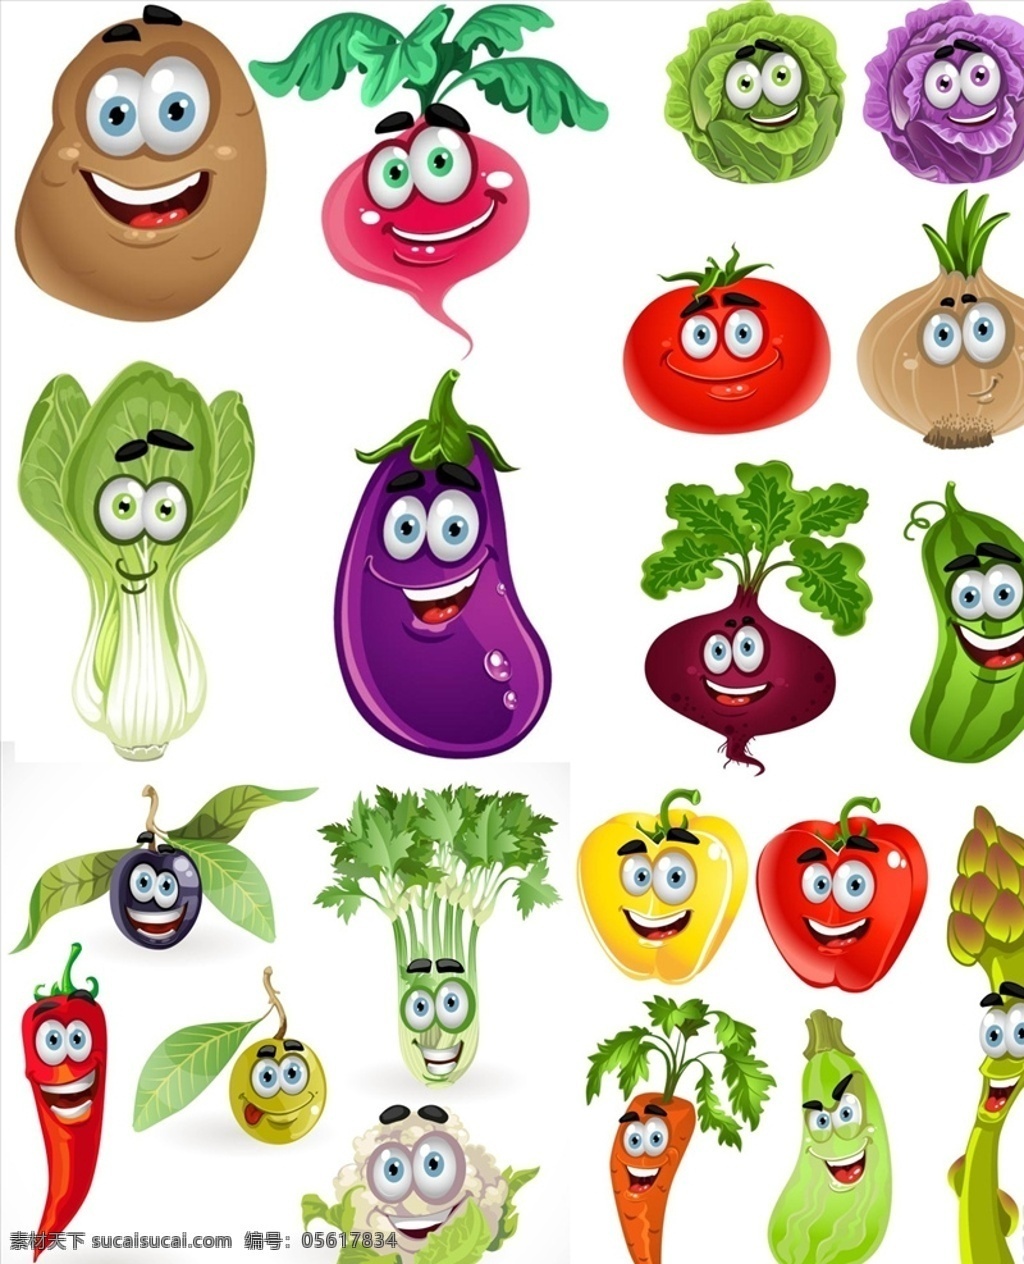 矢量蔬菜表情 矢量 手绘 卡通 表情 茄子 萝卜 青菜 包心菜 蔬菜 插画 卡通蔬菜 蔬菜绘画 手绘蔬菜 矢量蔬菜 蔬菜素材 蔬菜元素 元素 图标 图案